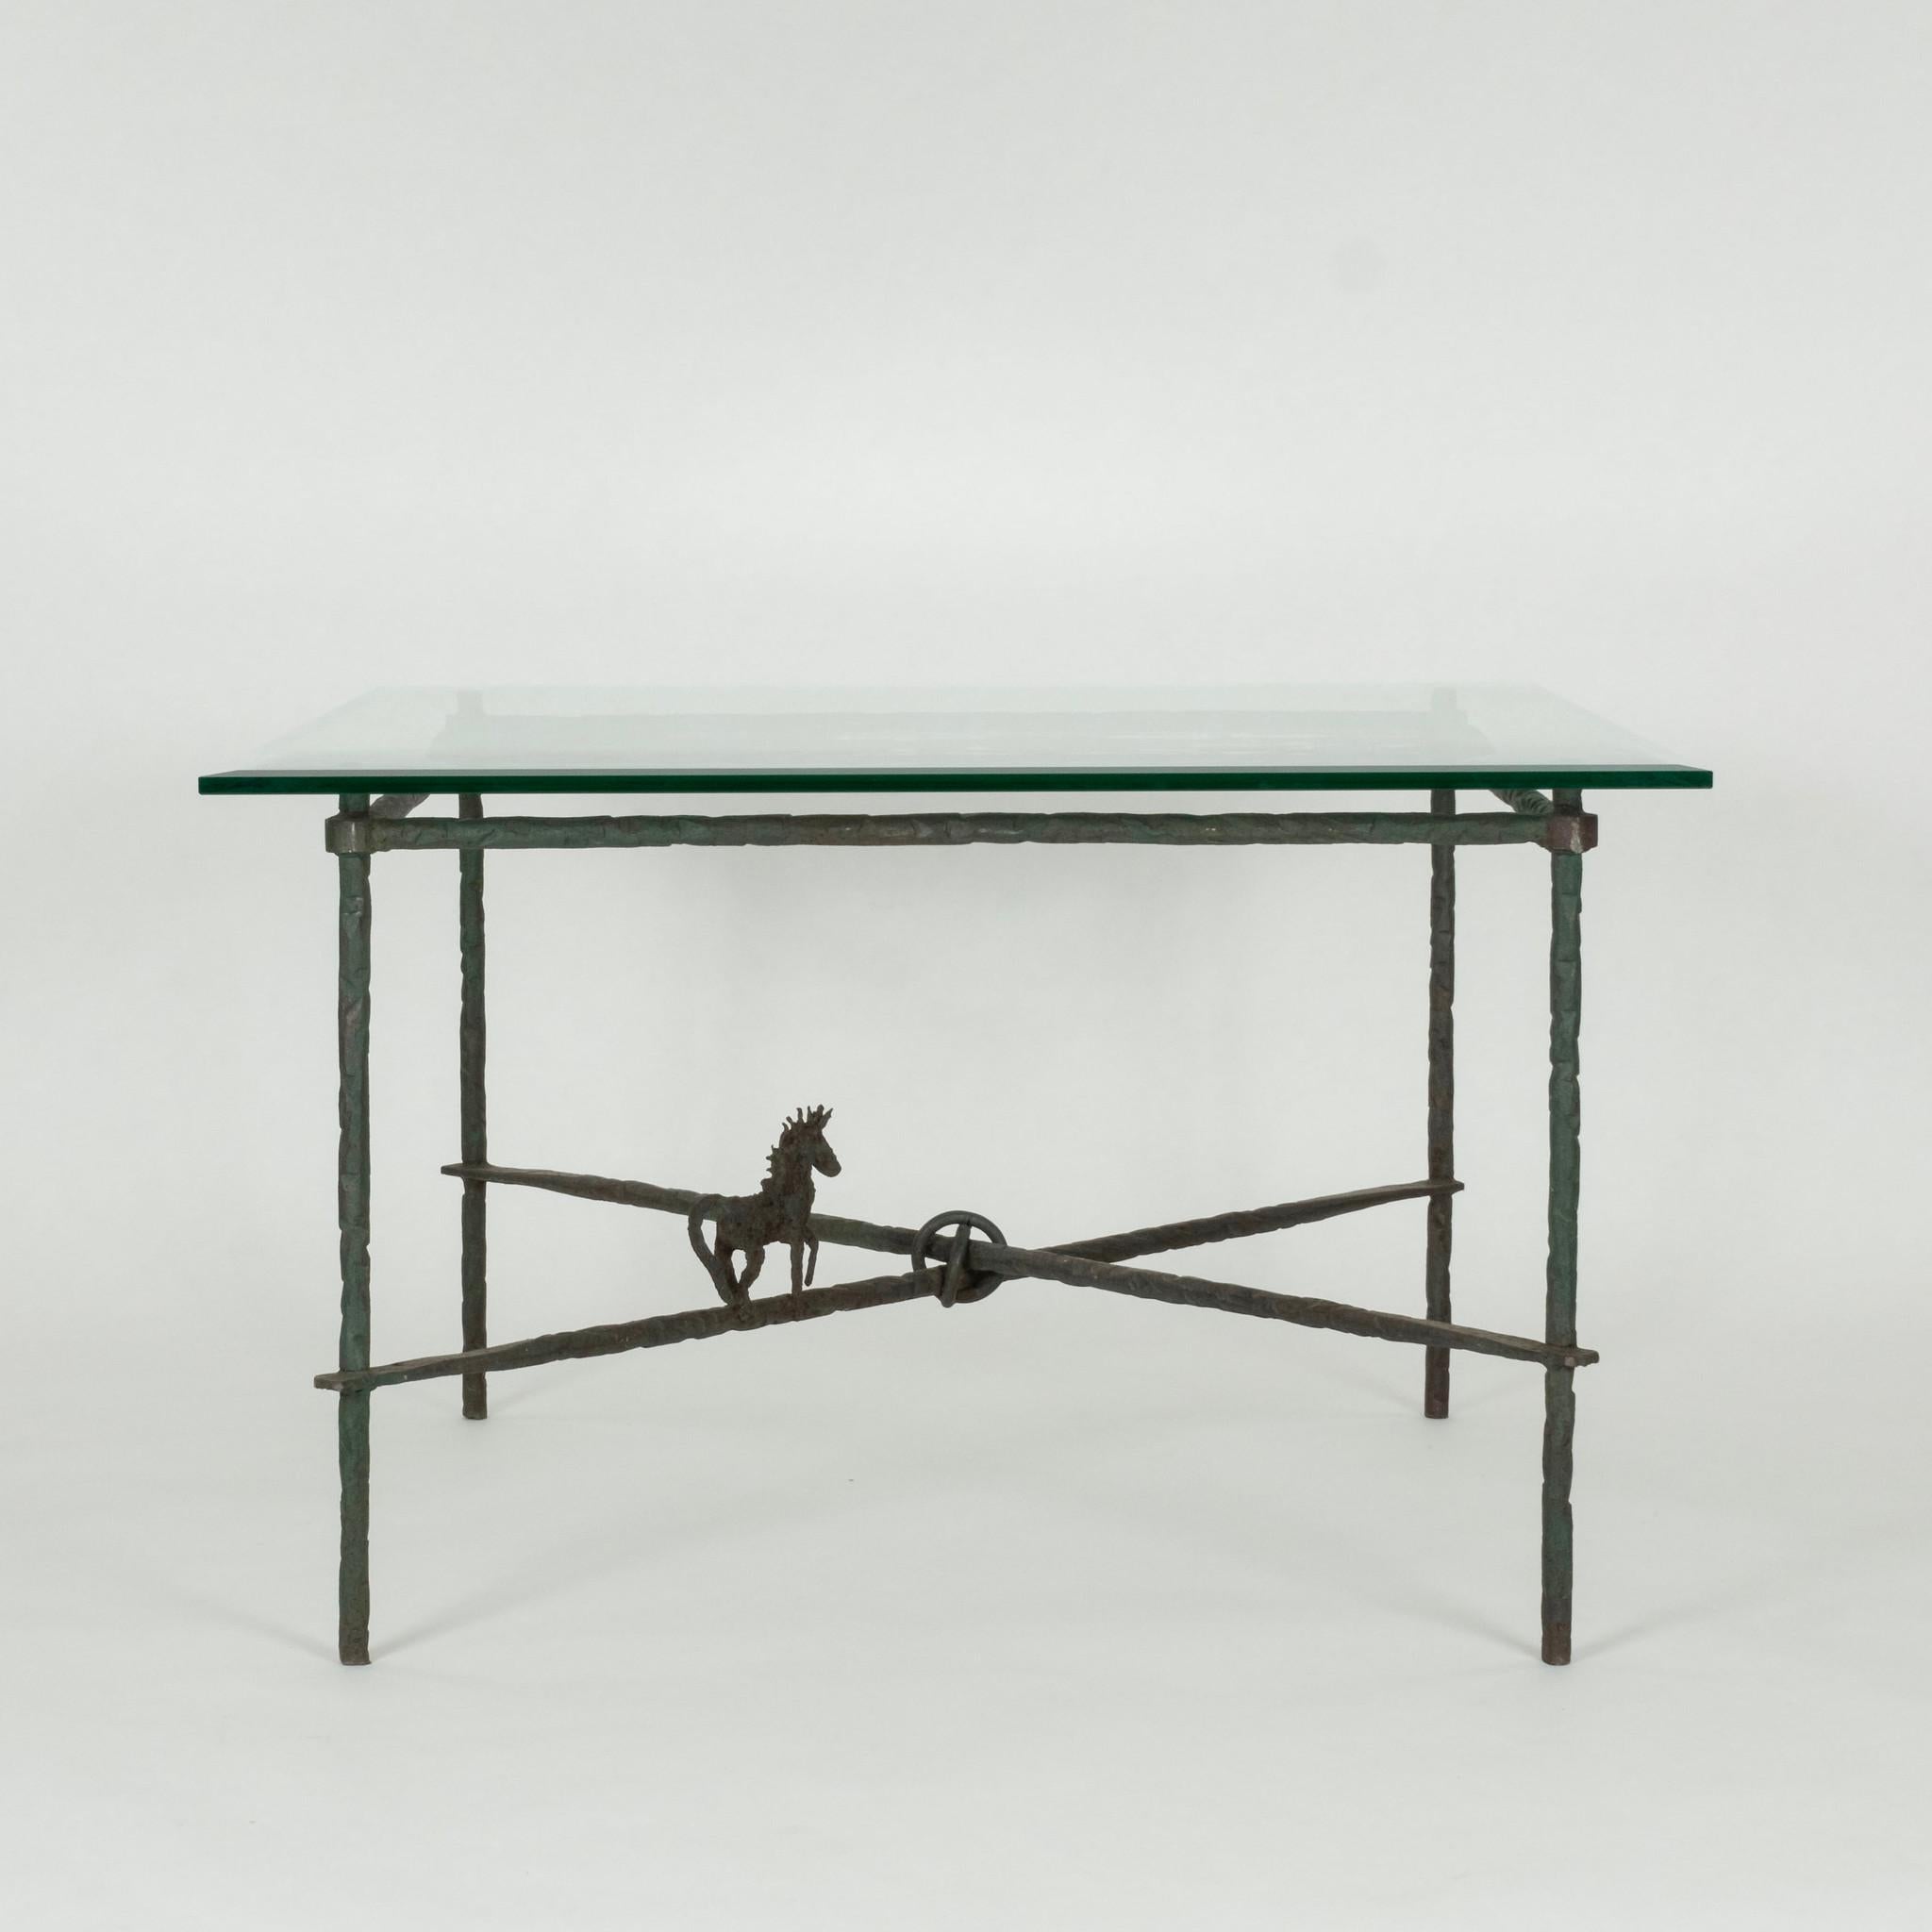 Une base de table de salle à manger carrée de style Giacometti en fer forgé verdâtre finement détaillé avec un châssis en croix, une sphère centrale et un cheval supportant un plateau en verre de 3/4